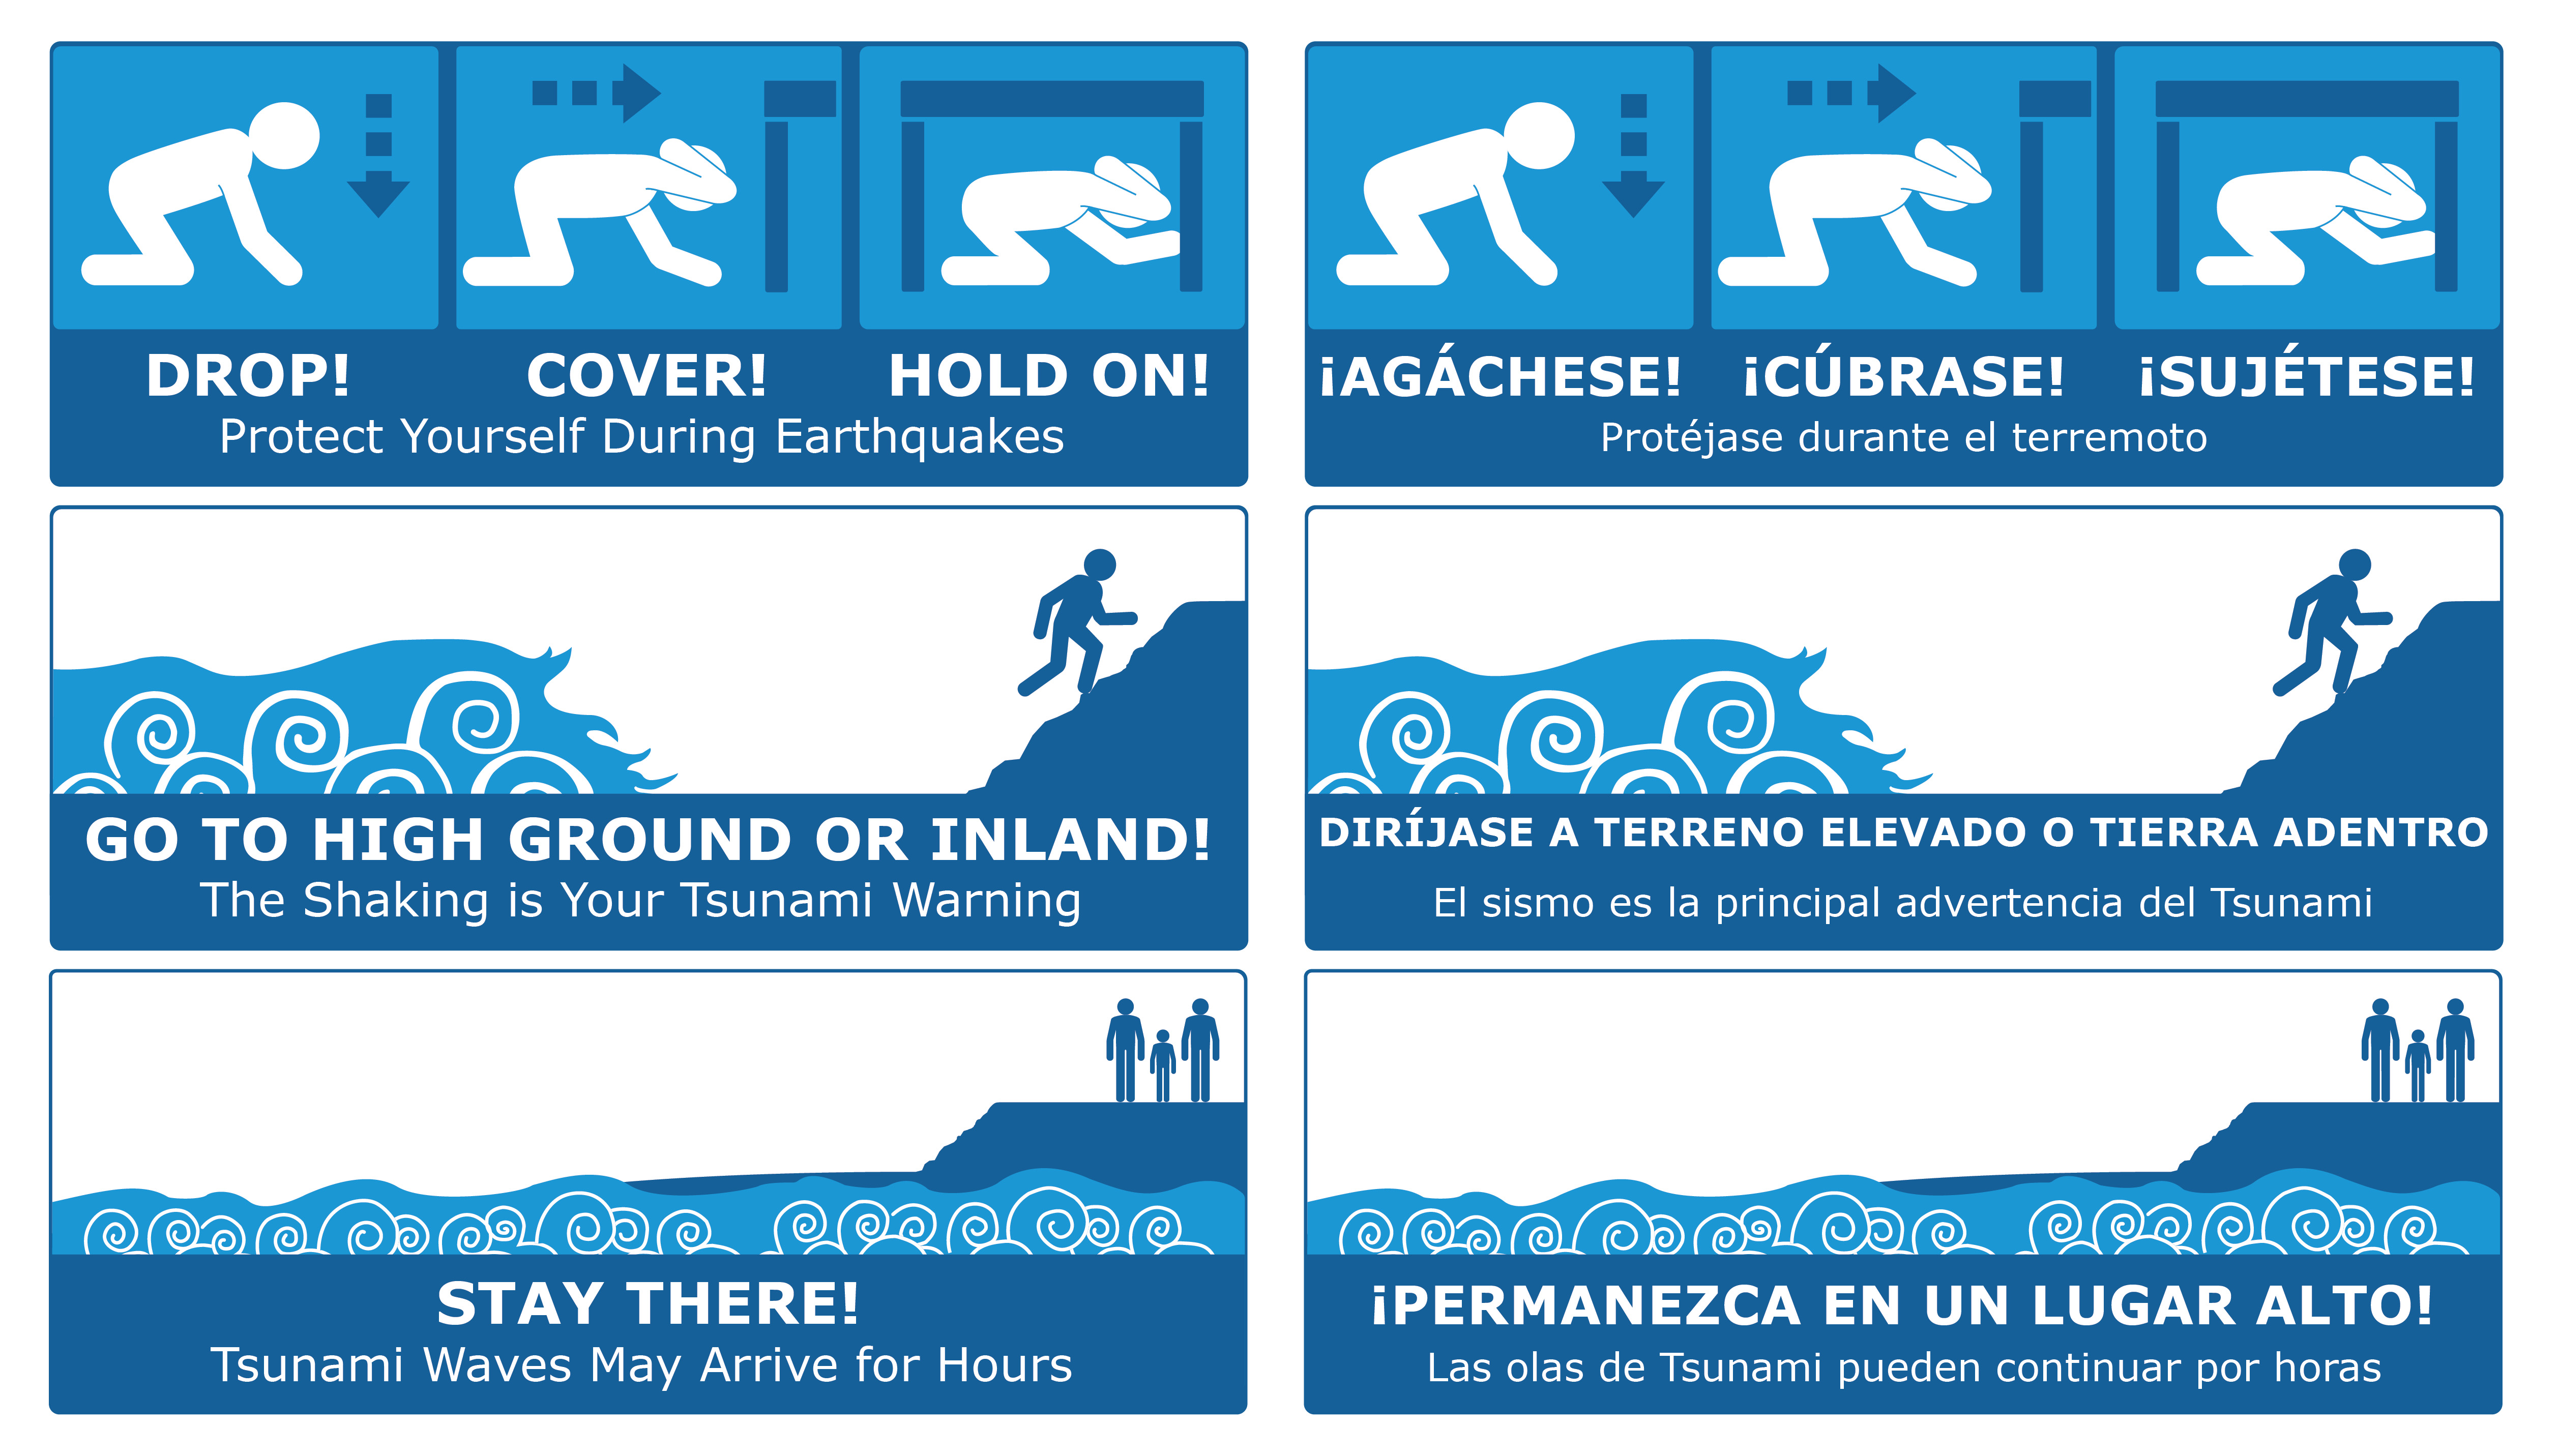 Tsunami Protective Actions